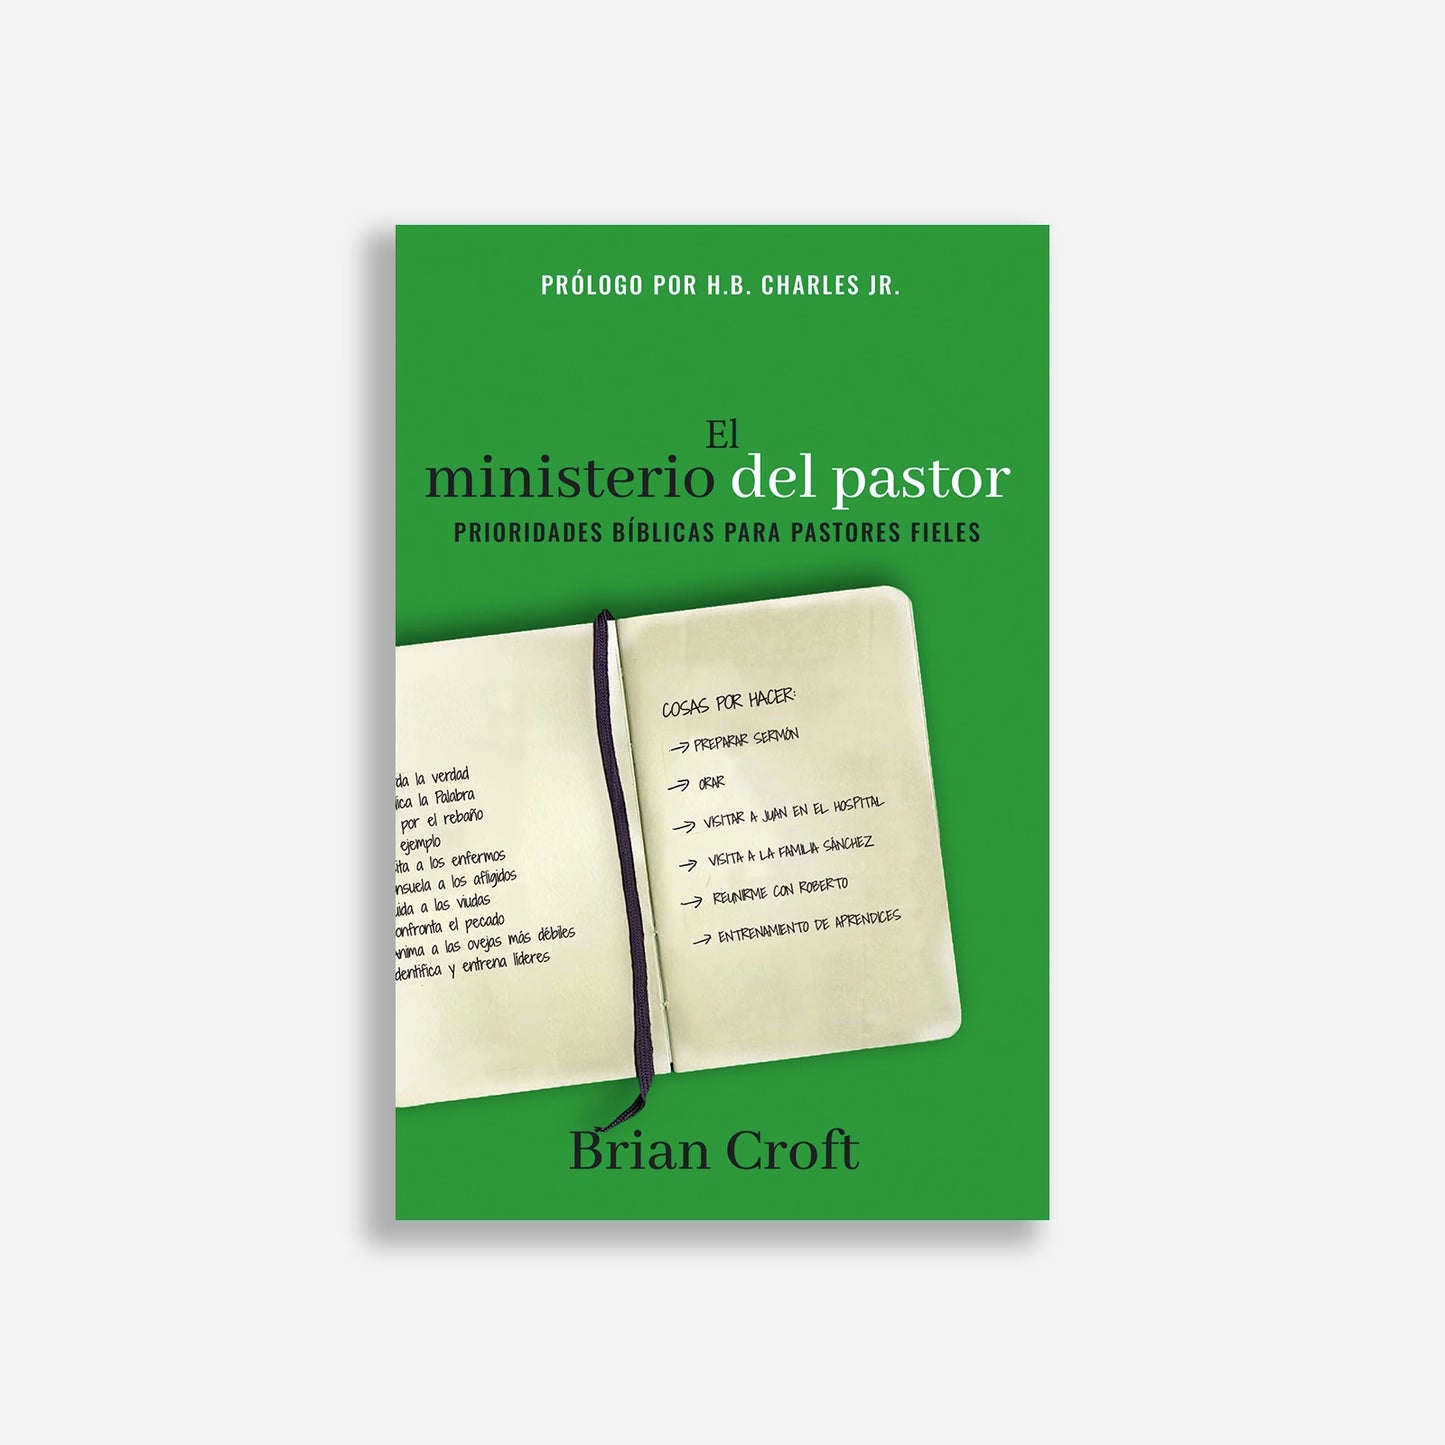 El ministerio del pastor: Prioridades bíblicas para pastores fieles